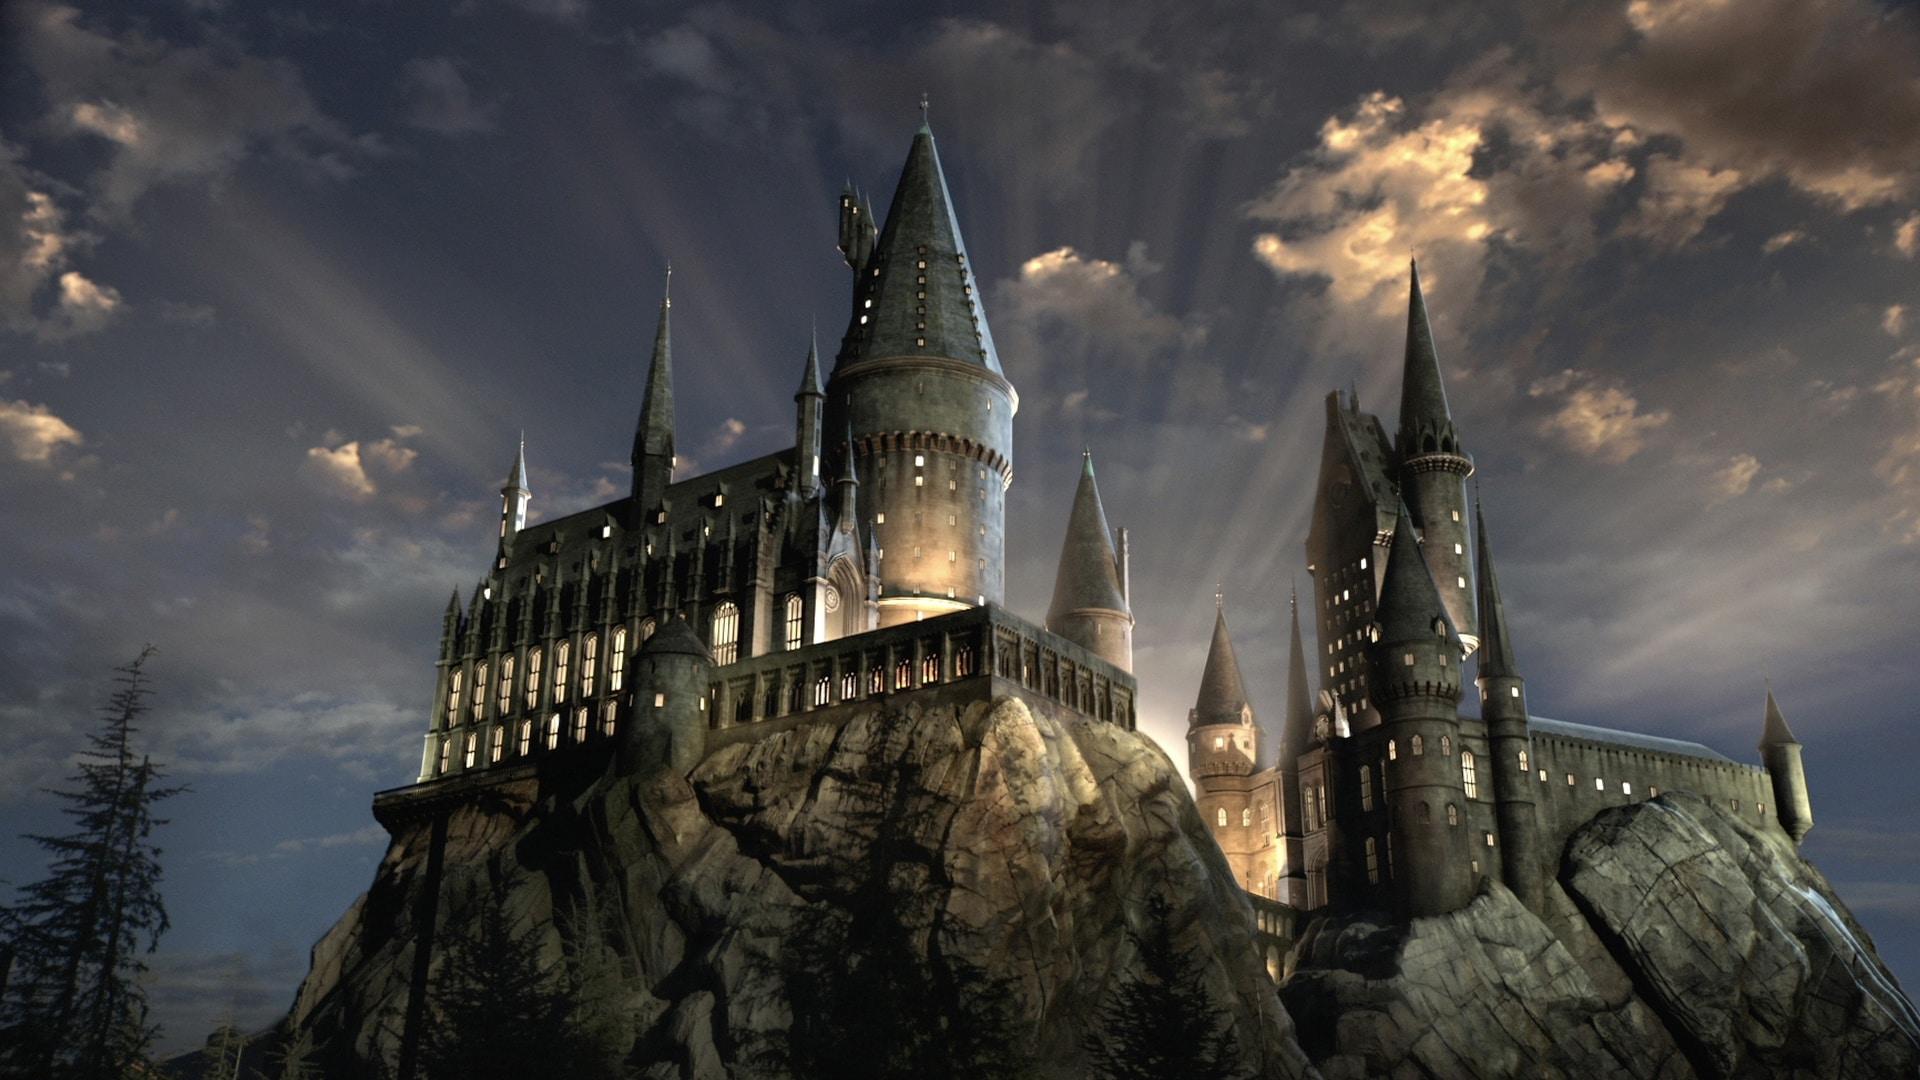 Animais Fantásticos e Onde Habitam 2 deve ter cenas em Hogwarts [RUMOR]